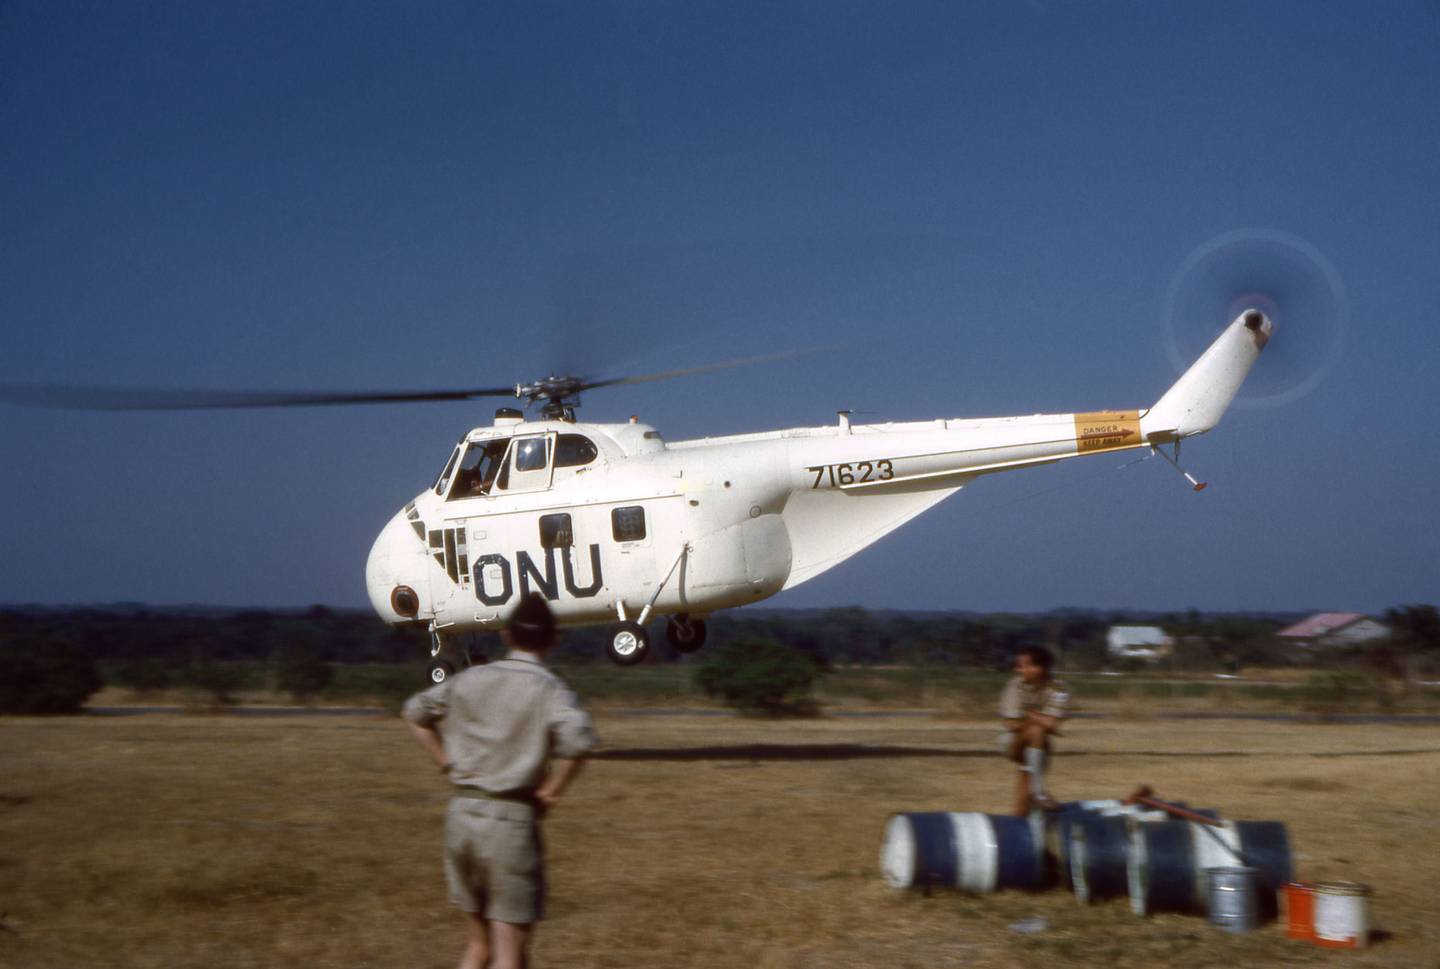 Mange av de norske Kongo-veteranene hadde oppgaver innen transport og logistikk i farlige omgivelser.